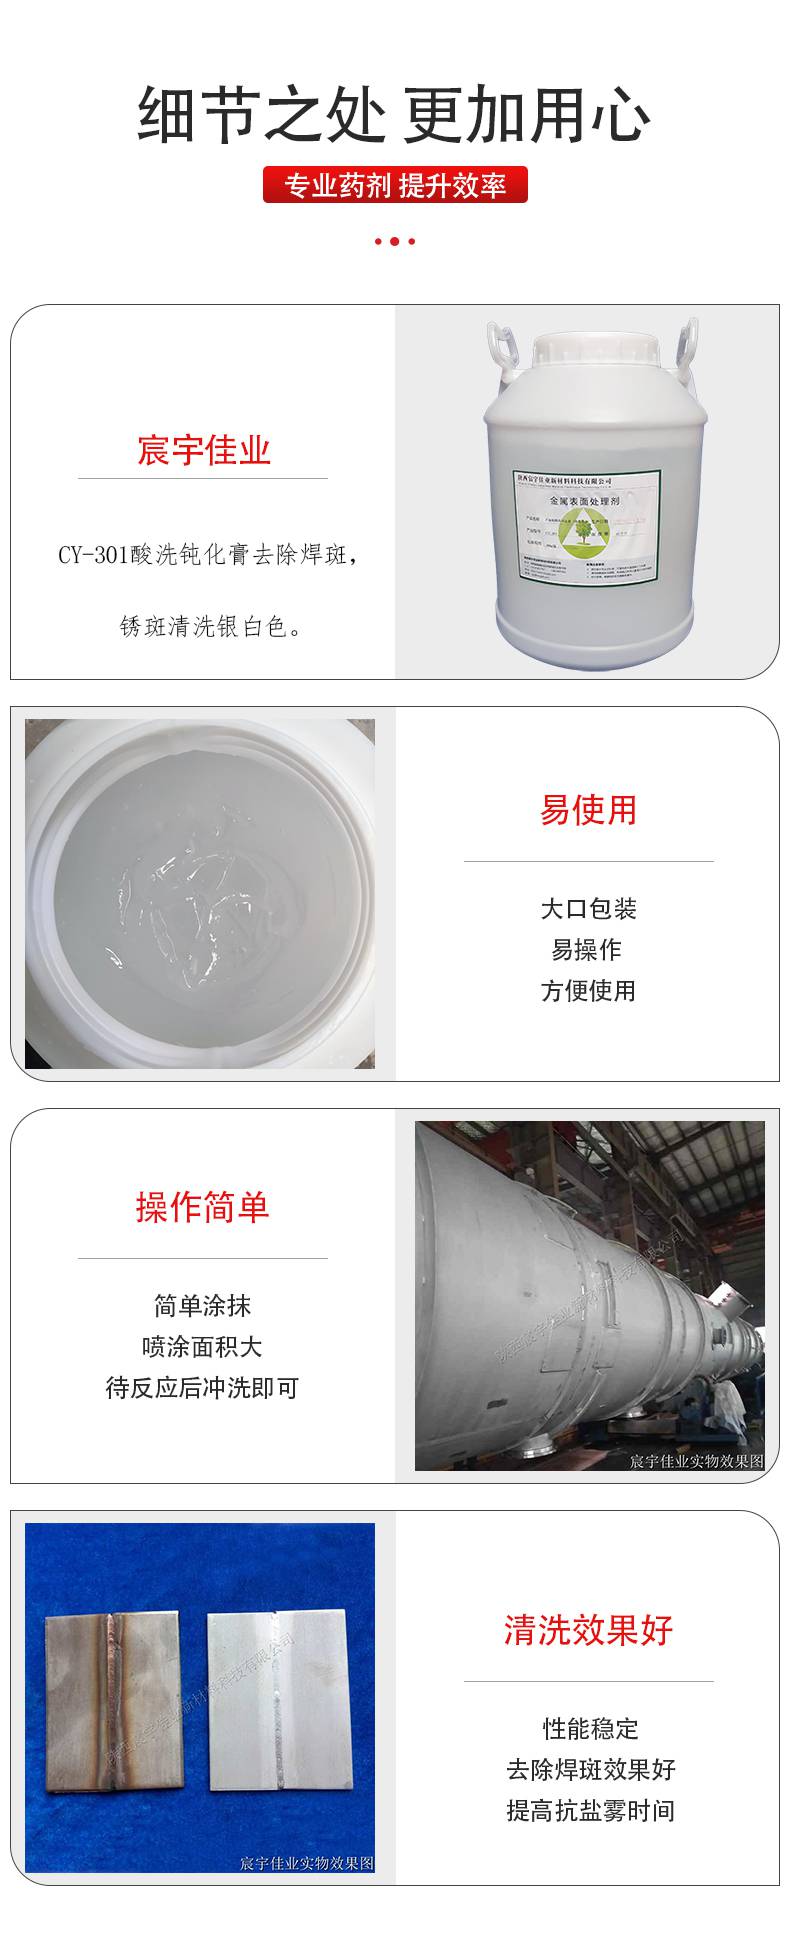 涂抹或喷涂工艺的酸洗钝化膏产品 CY-301宸宇佳业